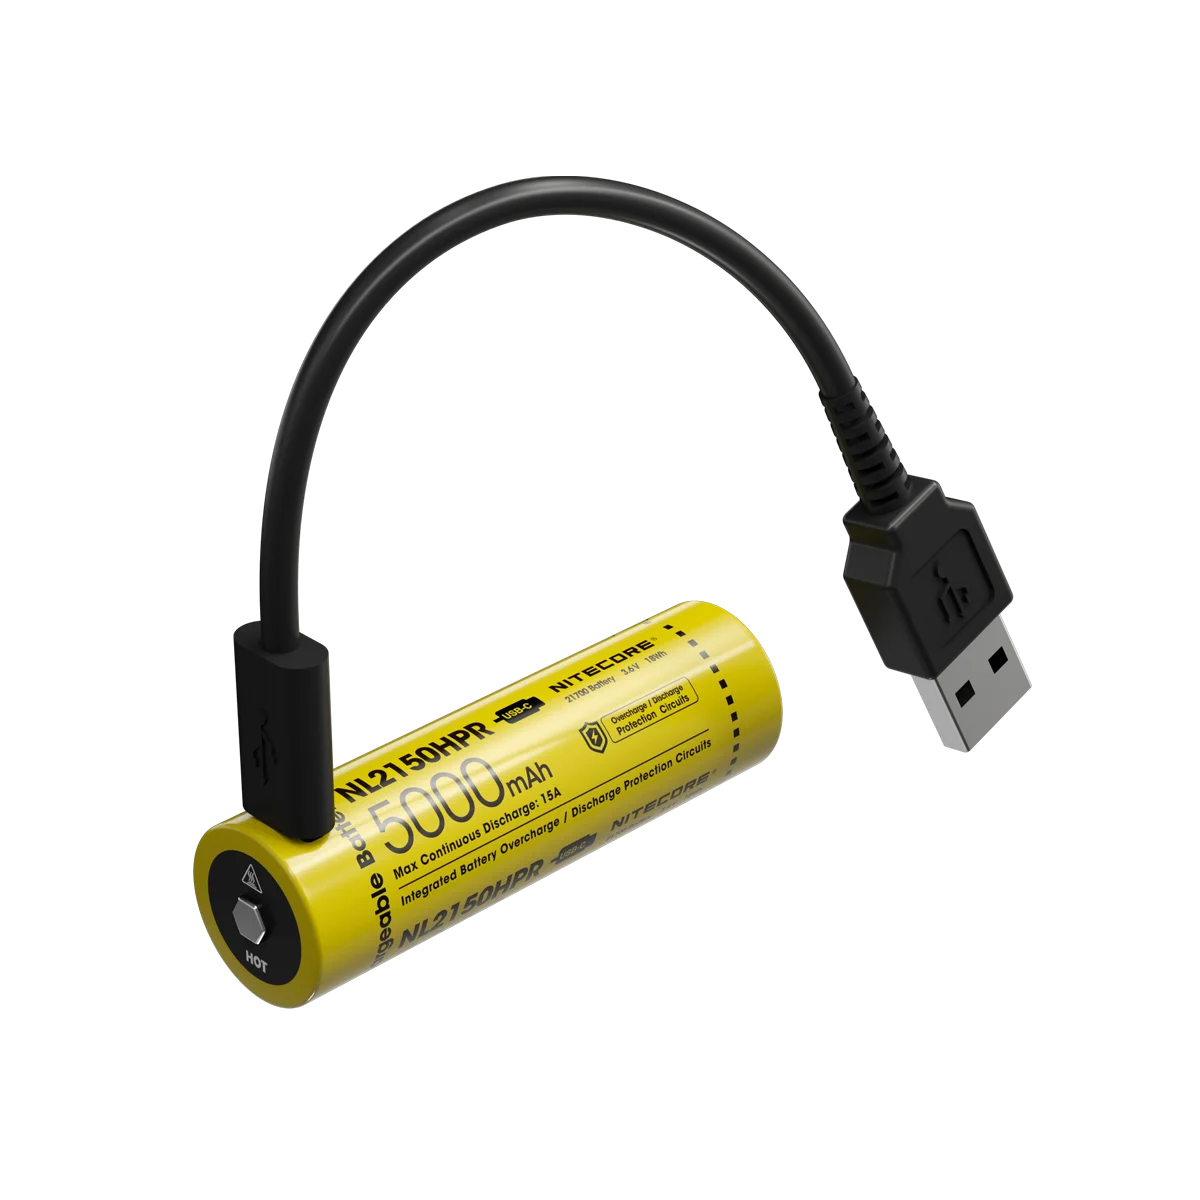 NITECORE NL2150HPR 21700 5000 мАч 3,6 В 15A 18 Втч С Высоким Расходом USB-C Литий-ионная Аккумуляторная Батарея UI1 UI2 Smart Charger2